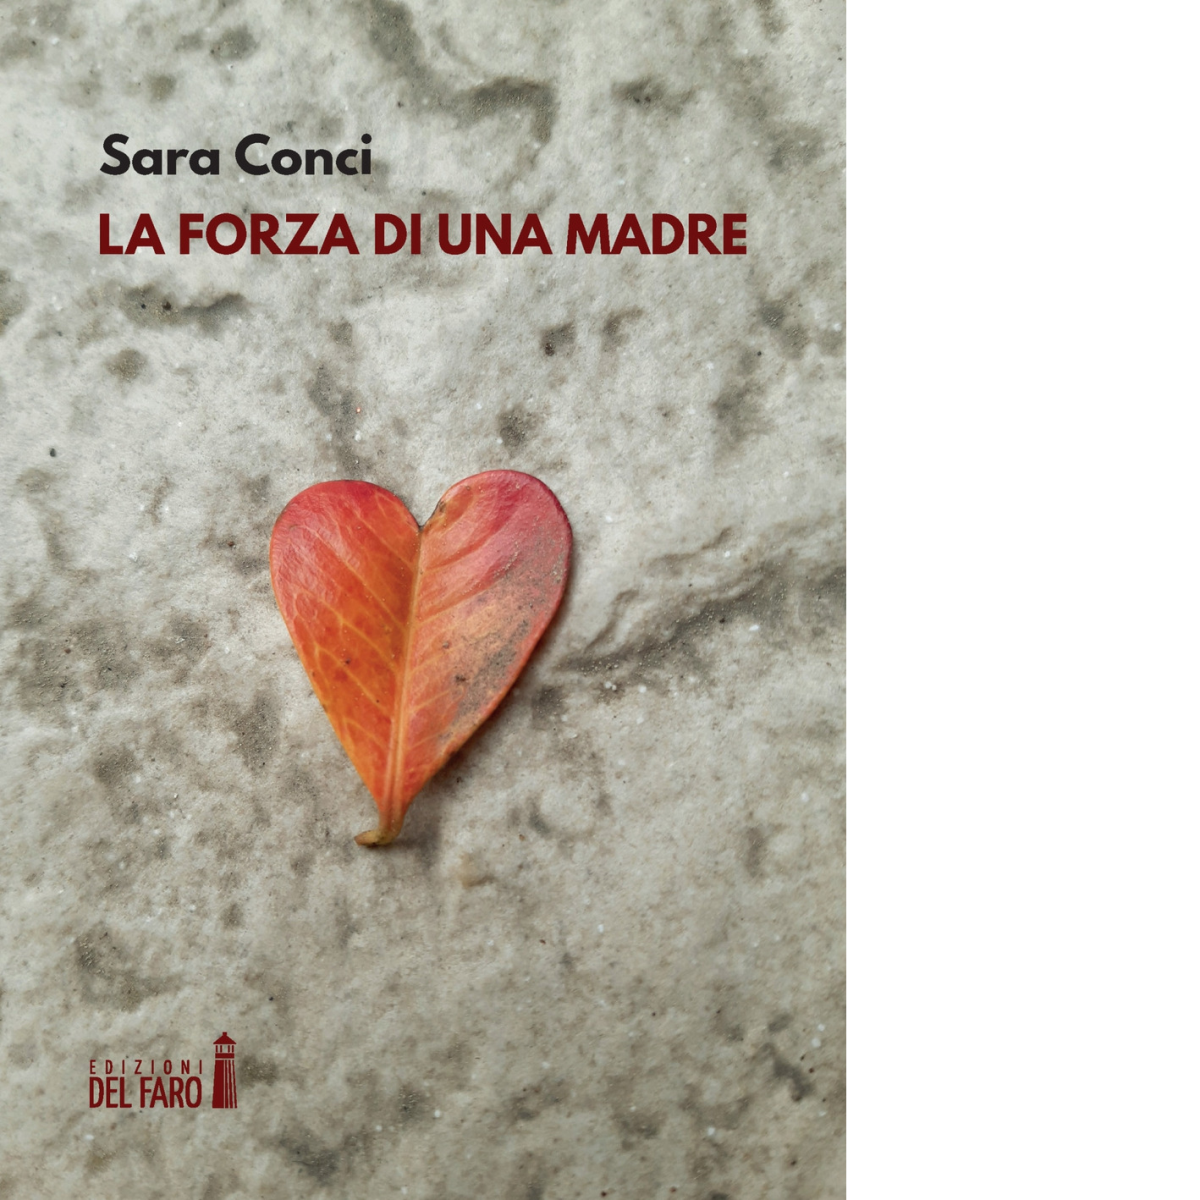 La forza di una madre di Conci Sara - Edizioni Del faro, 2021 libro usato